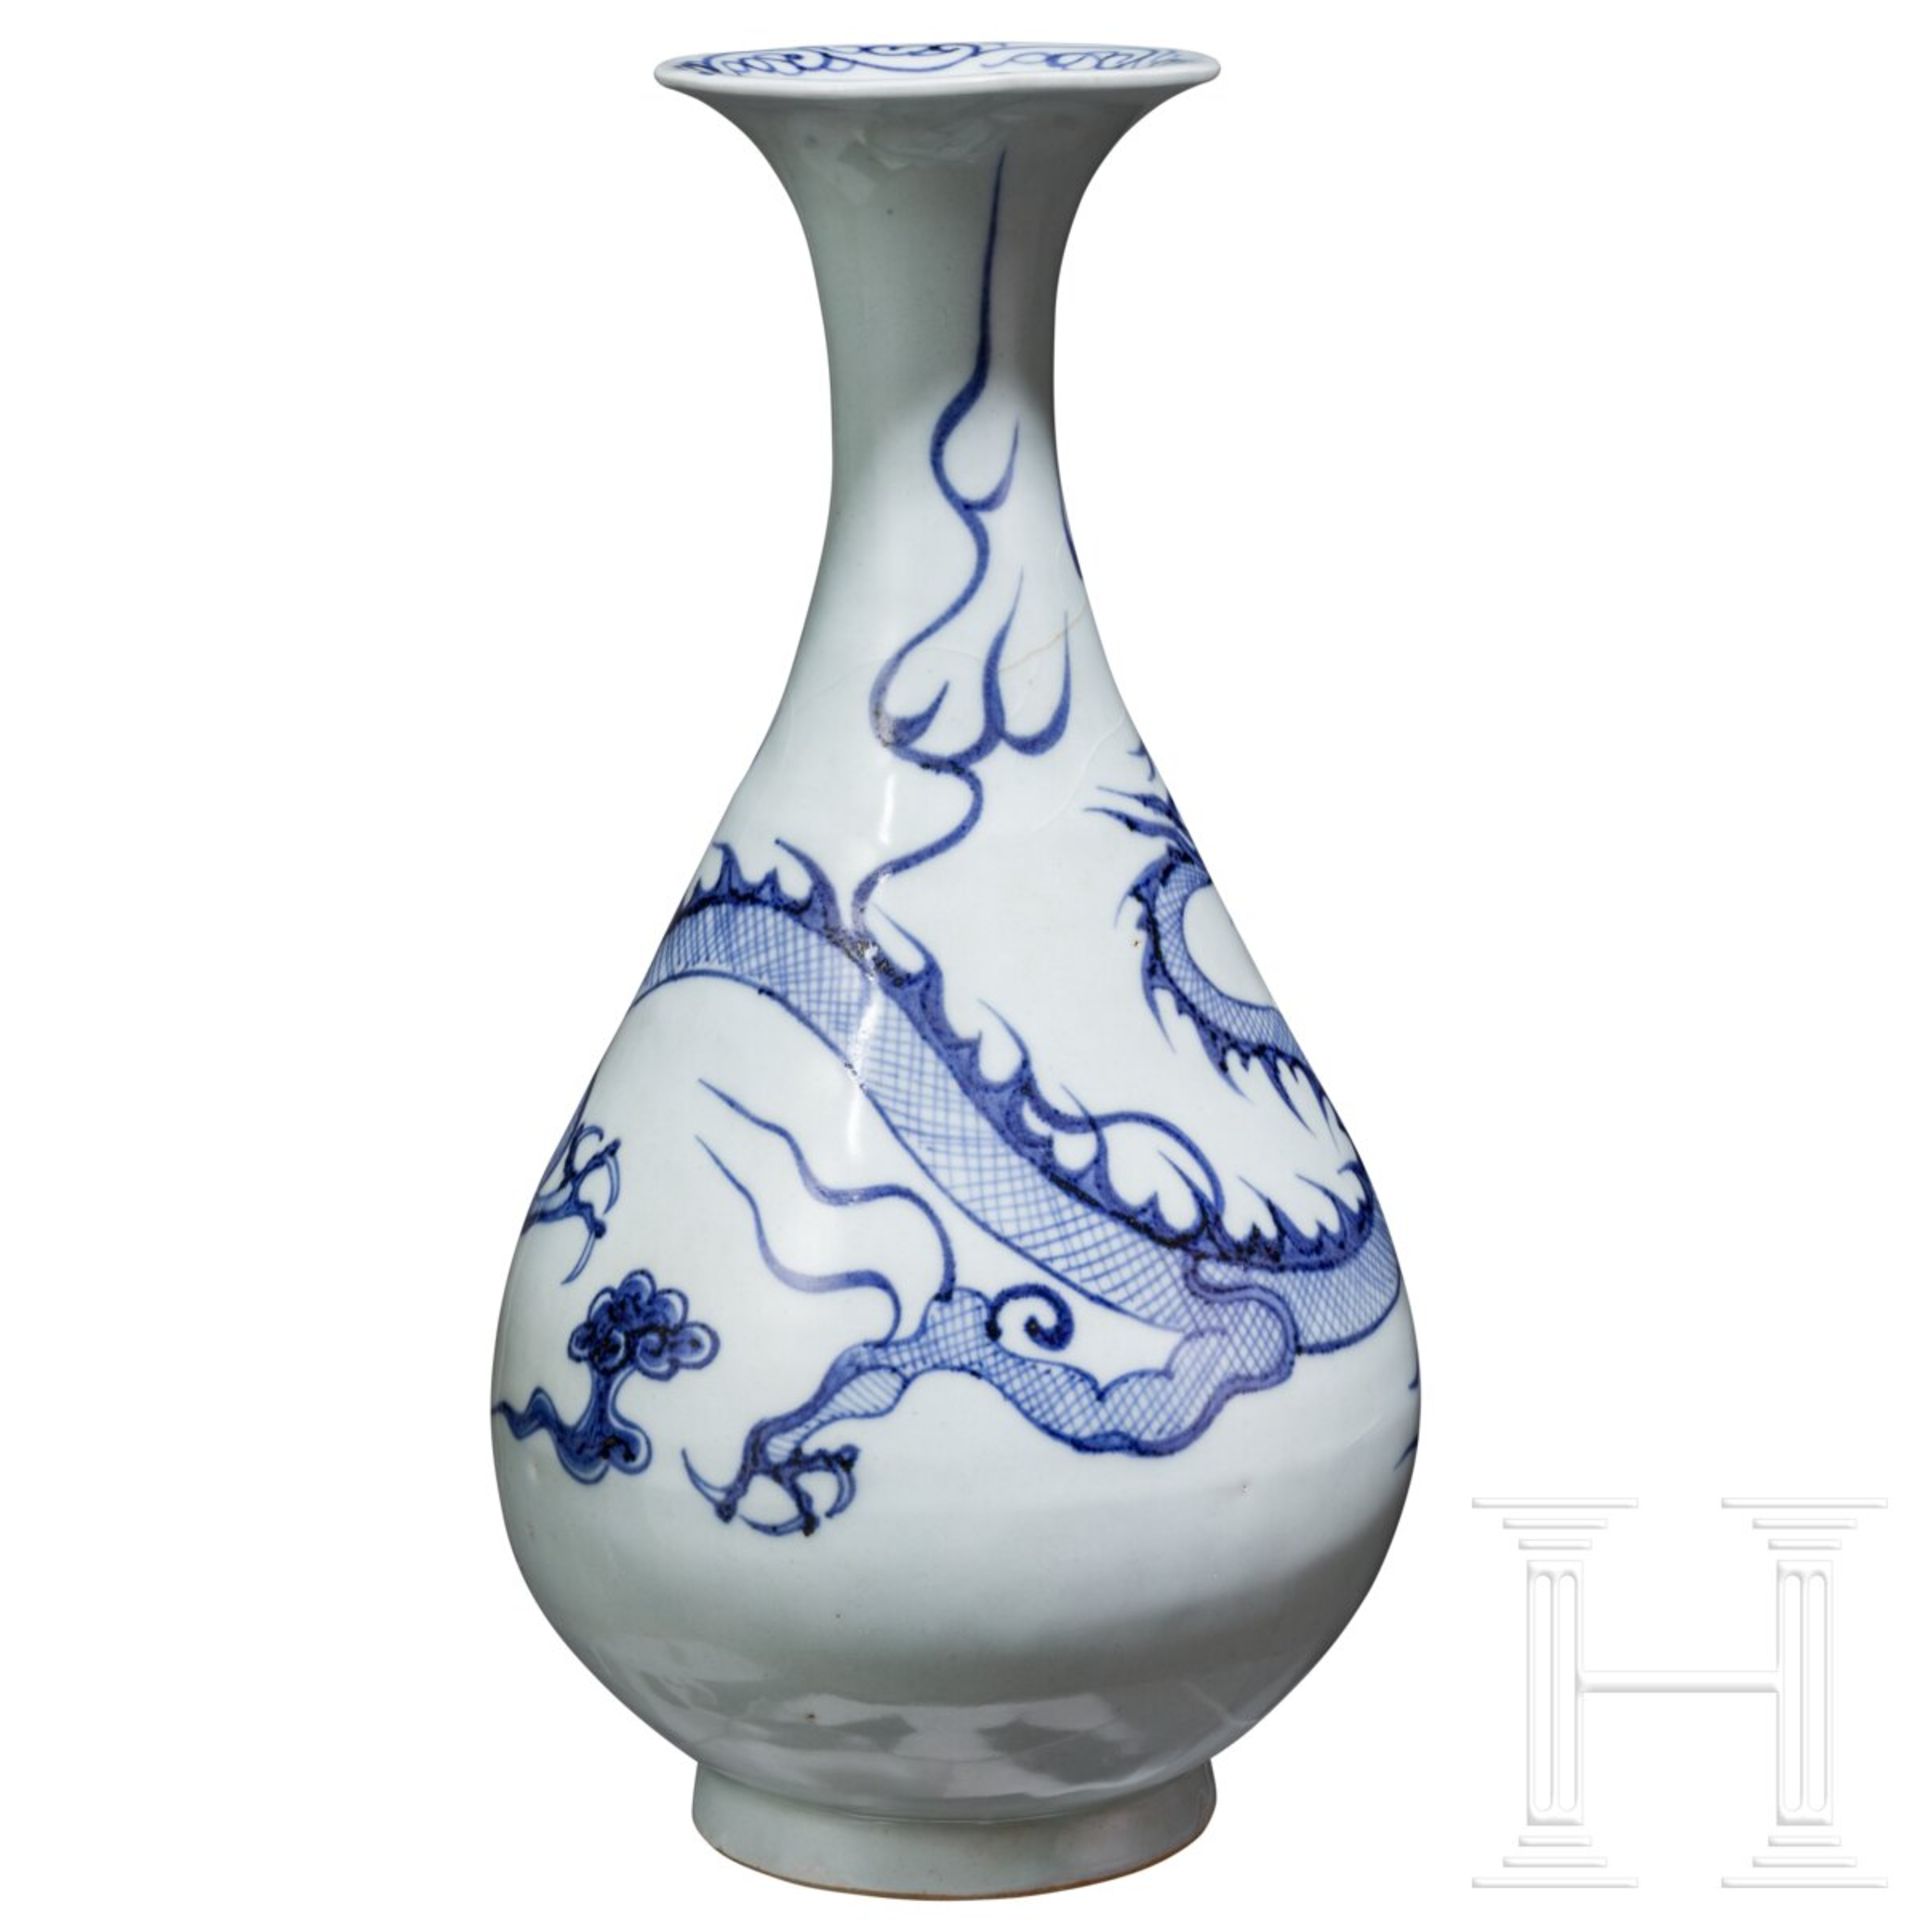 Birnenförmige blau-weiße Vase (Ping) mit Drache, China, wohl Yuan-Dynastie - Bild 2 aus 10